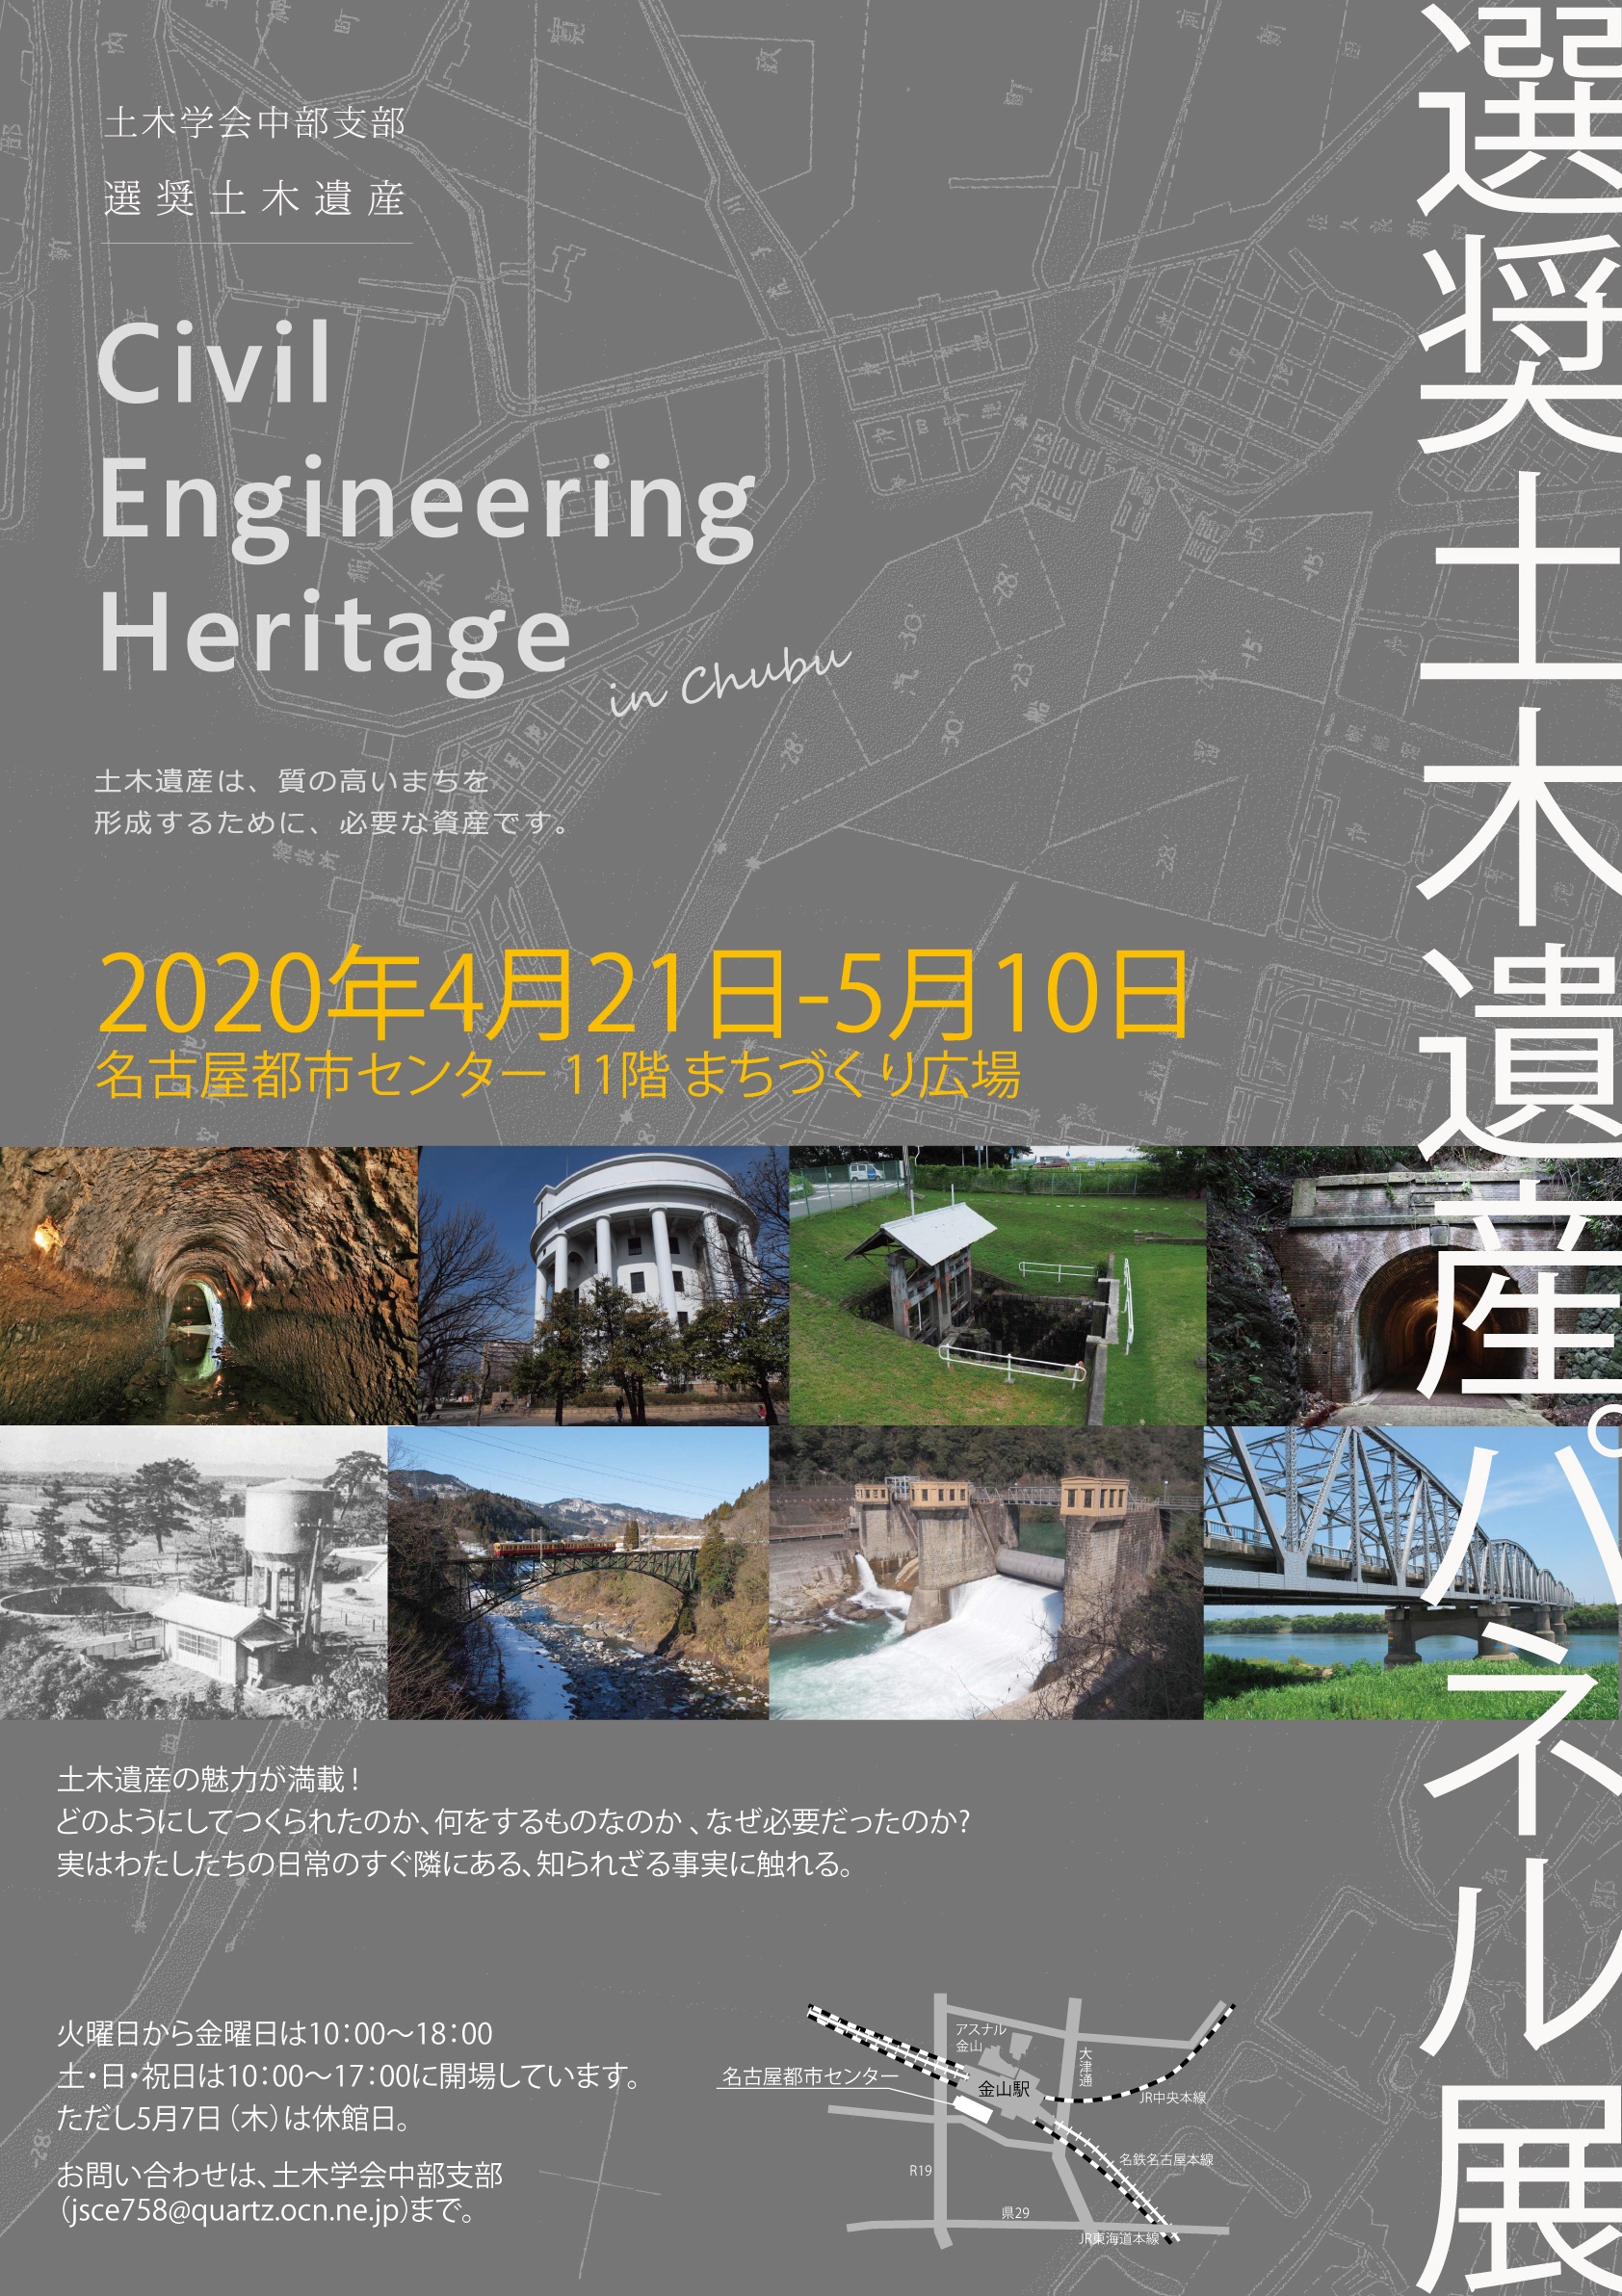 【中止】選奨土木遺産パネル展　「Civil Engineering Heritage in Chubu 2020」